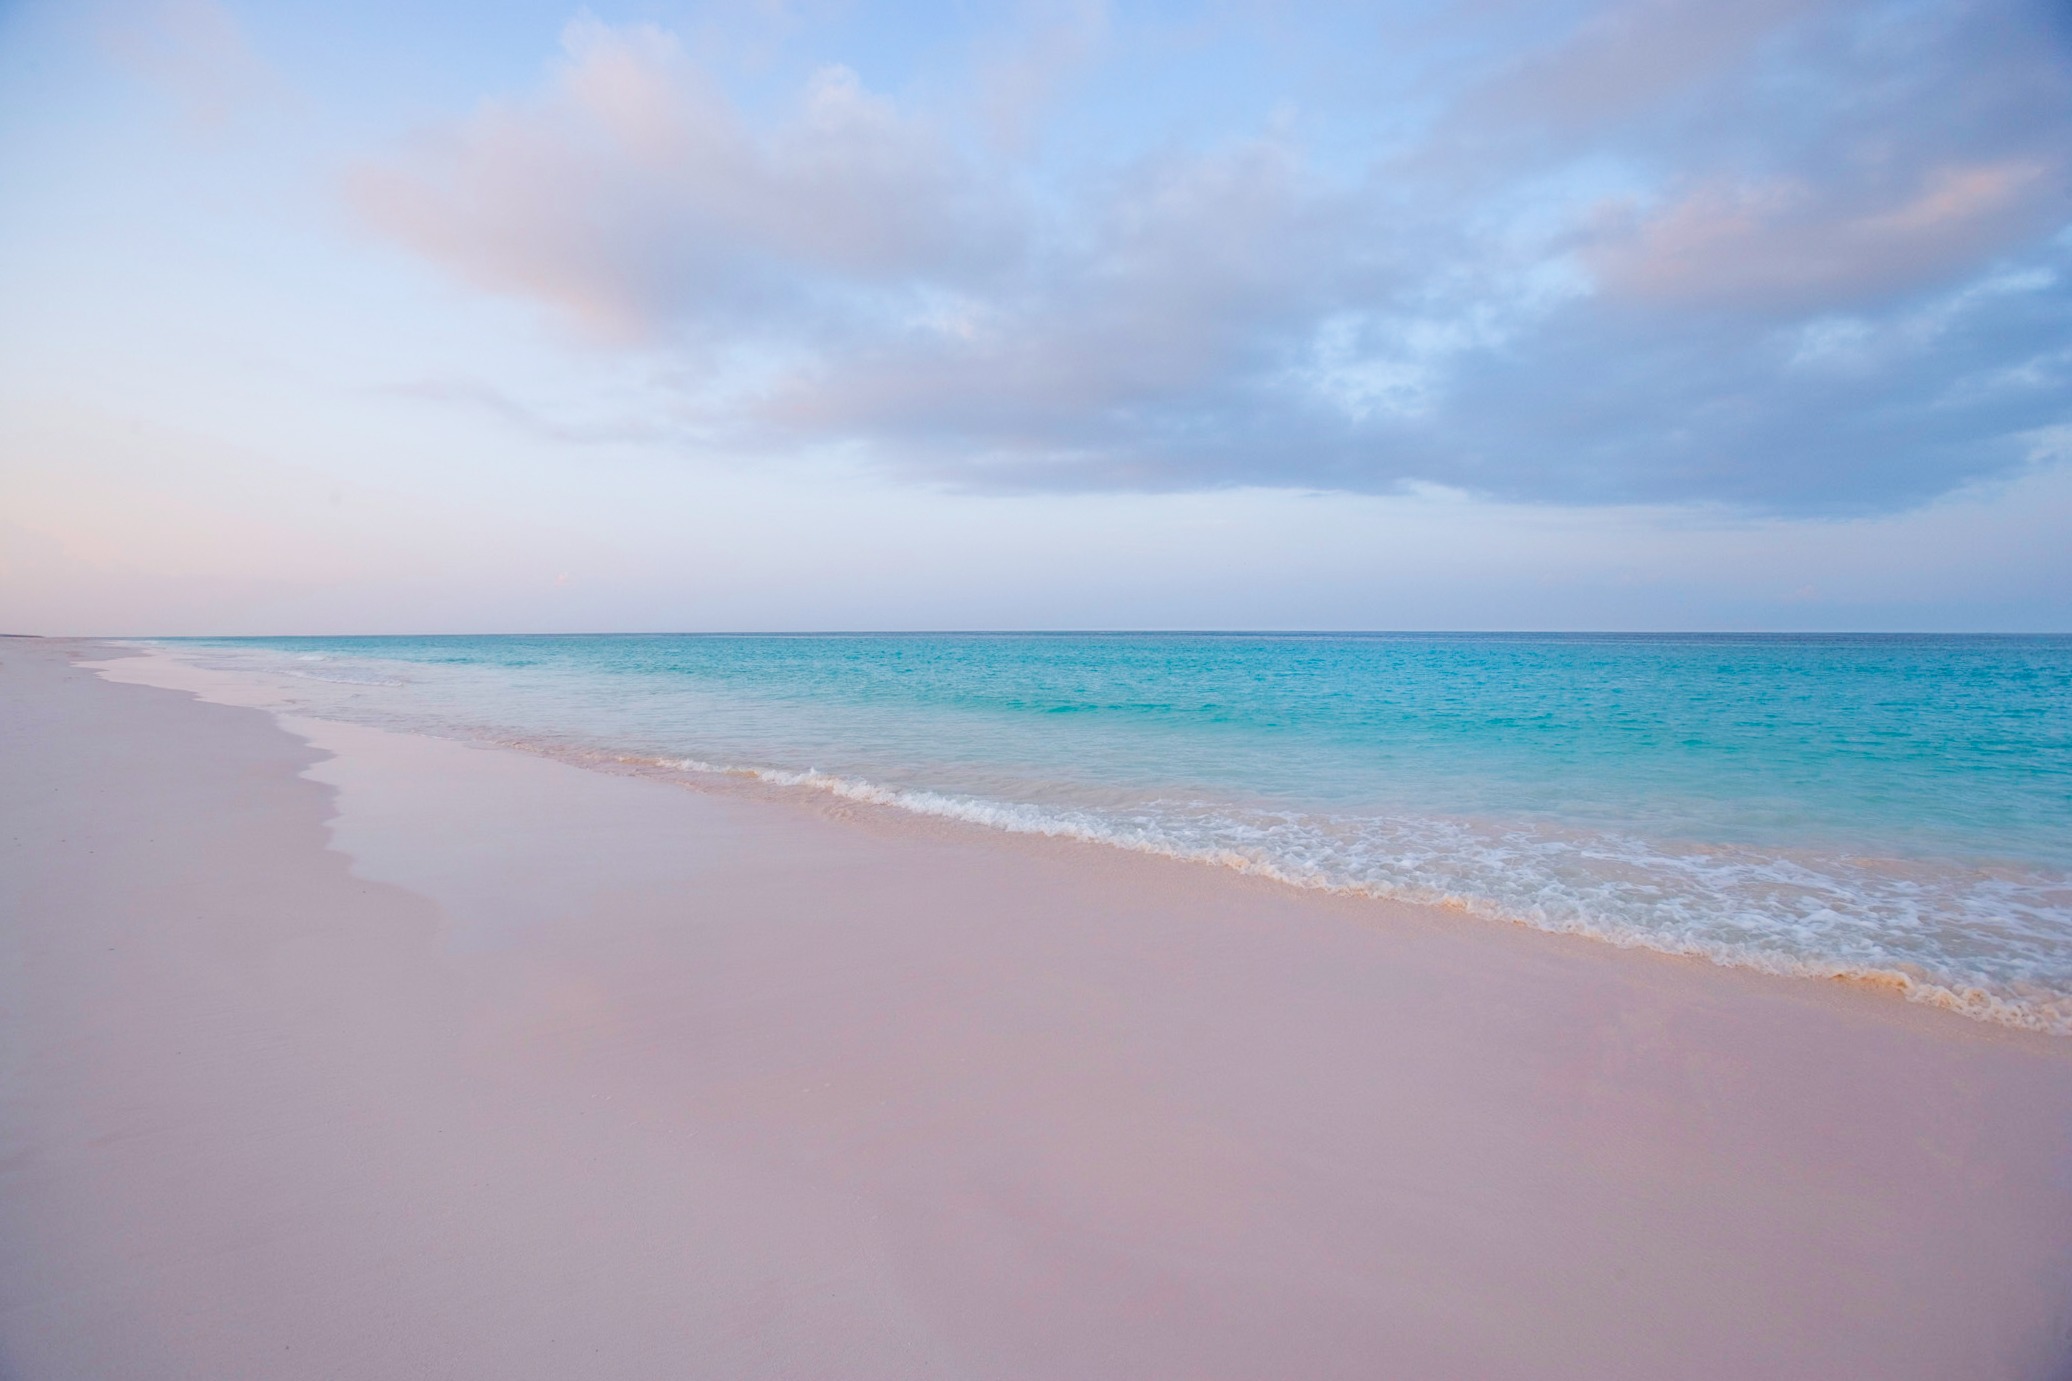 【携程攻略】邓穆尔镇粉色沙滩景点,粉色沙滩位于巴哈马群岛上哈勃岛，被美国《新闻周刊》评选为世界上最…